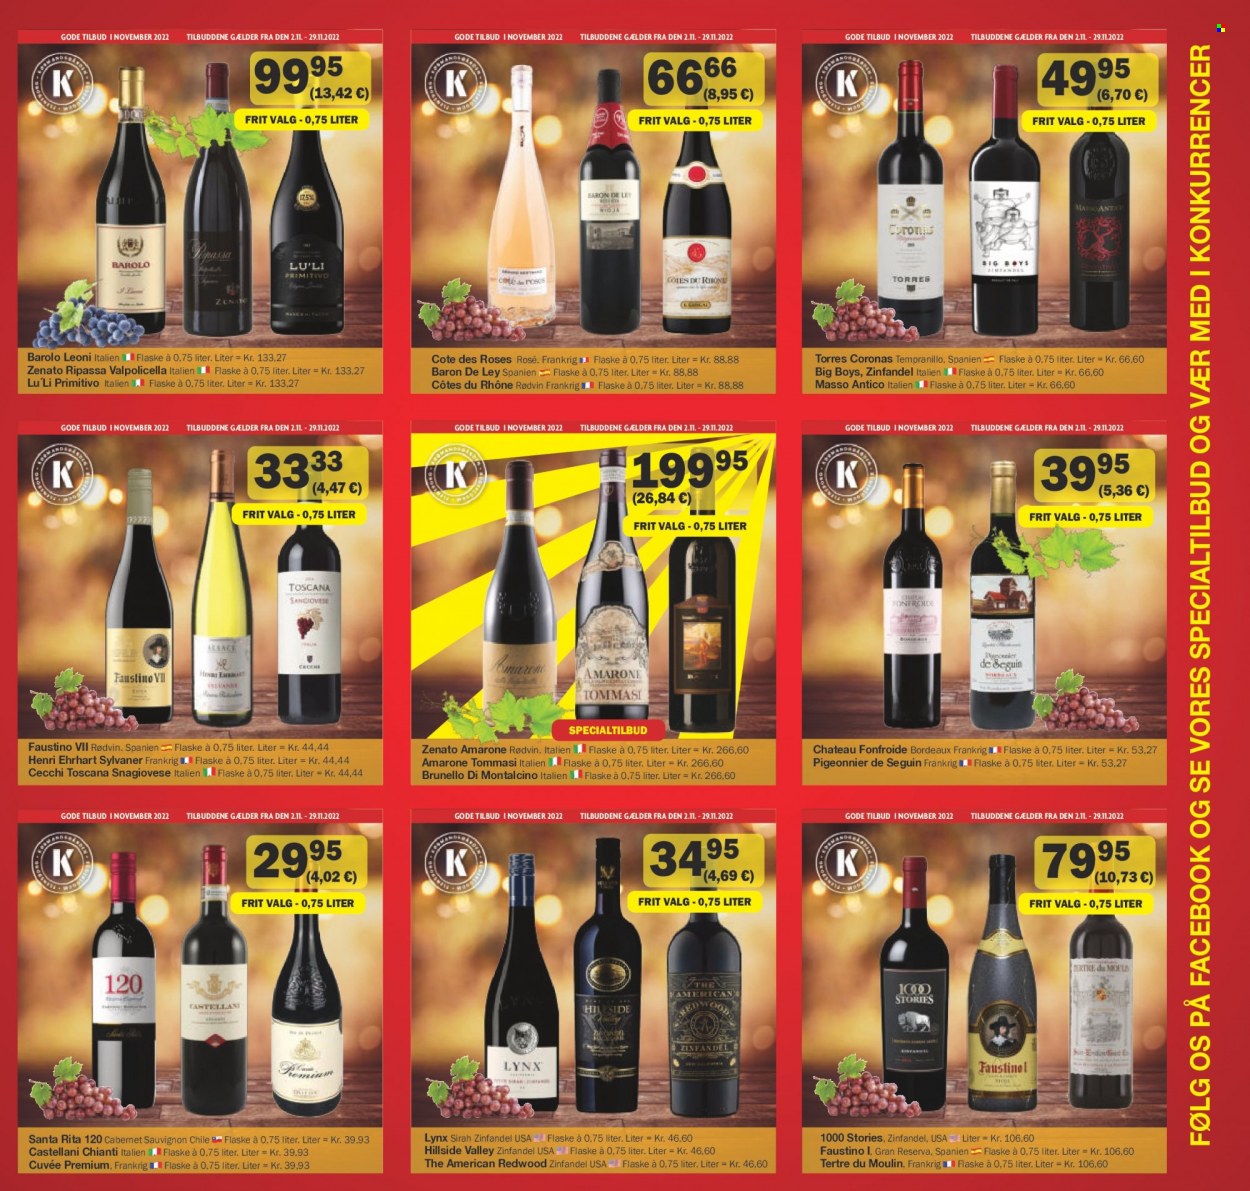 thumbnail - Købmandsgården tilbud  - 2.11.2022 - 29.11.2022 - tilbudsprodukter - Cabernet Sauvignon, Côtes du Rhône, Chianti, rødvin, Valpolicella, vin, Zinfandel. Side 5.